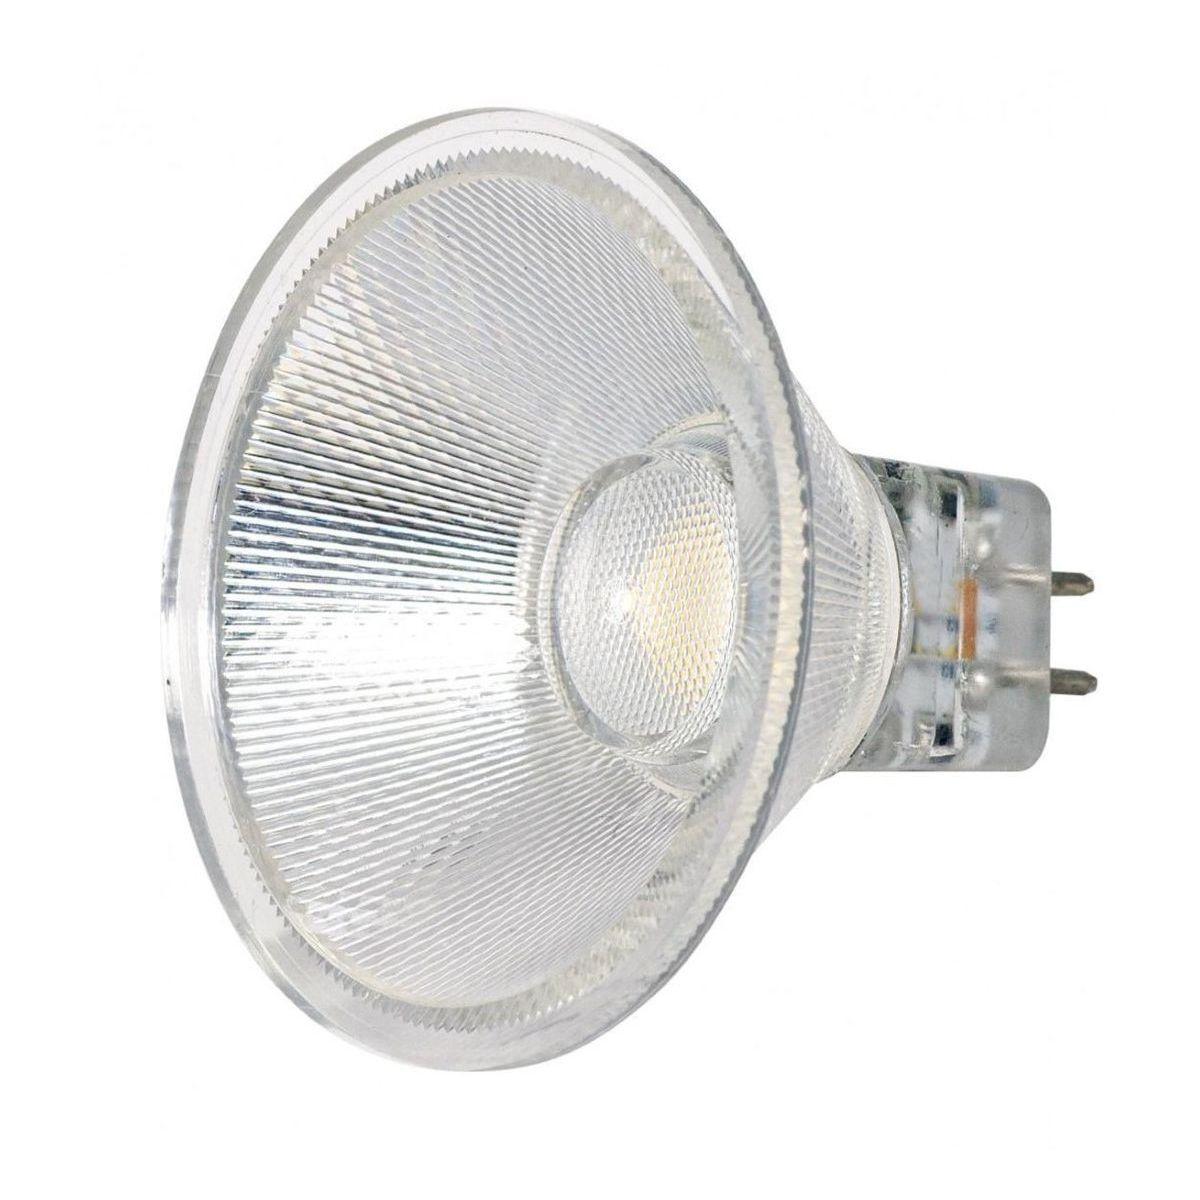 MR16 Reflector LED bulb, 3 watt, 330 Lumens, 3000K, GU5.3 Base, 40 Deg. Flood - Bees Lighting